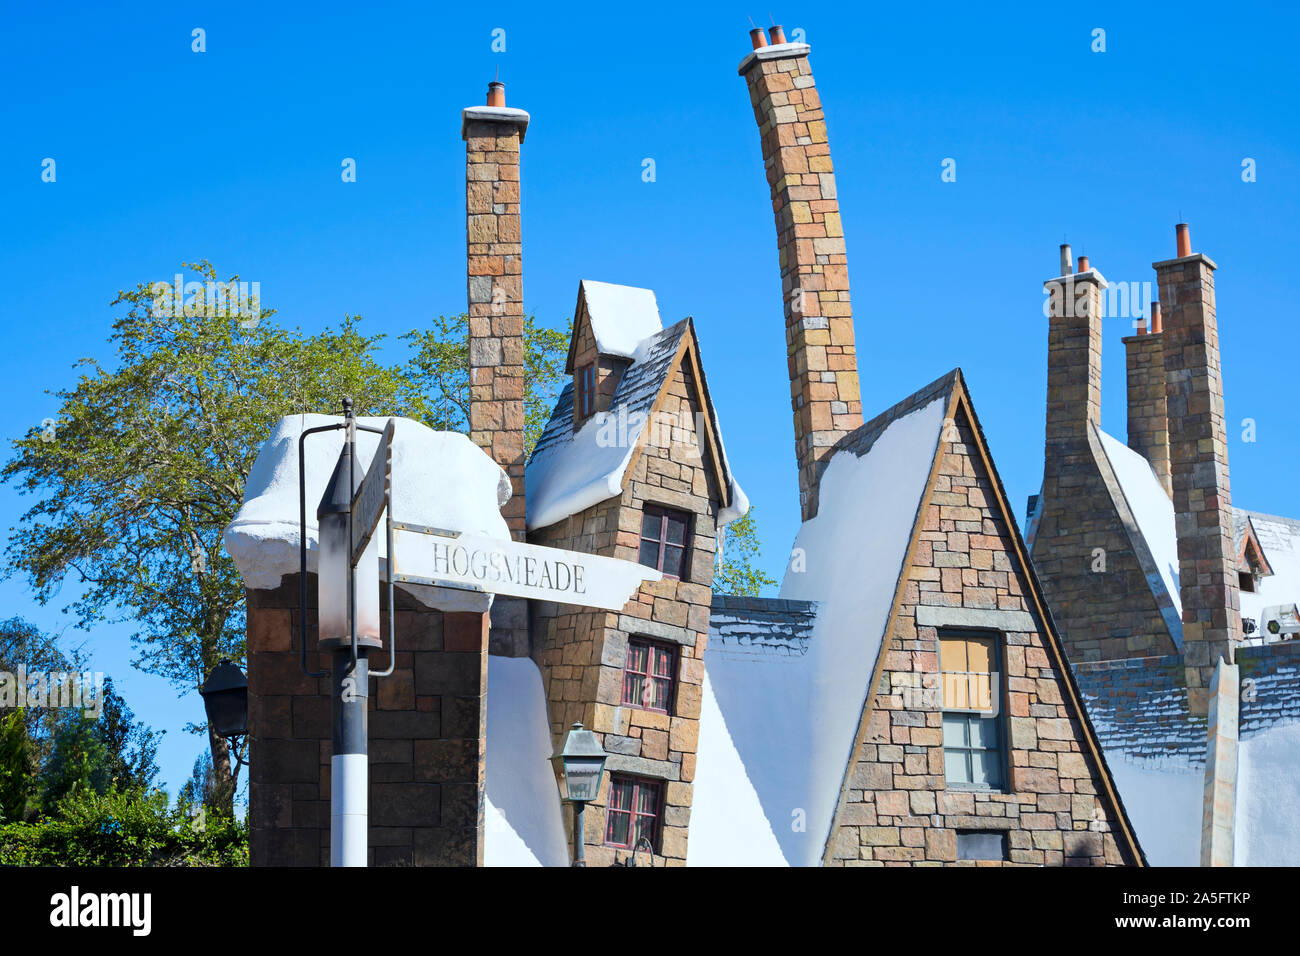 Villaggio Hogsmeade, tetti camini, mondo di Wizarding di Harry Potter, Isole di avventura, Universal Studios, Orlando, Florida, Stati Uniti d'America Foto Stock